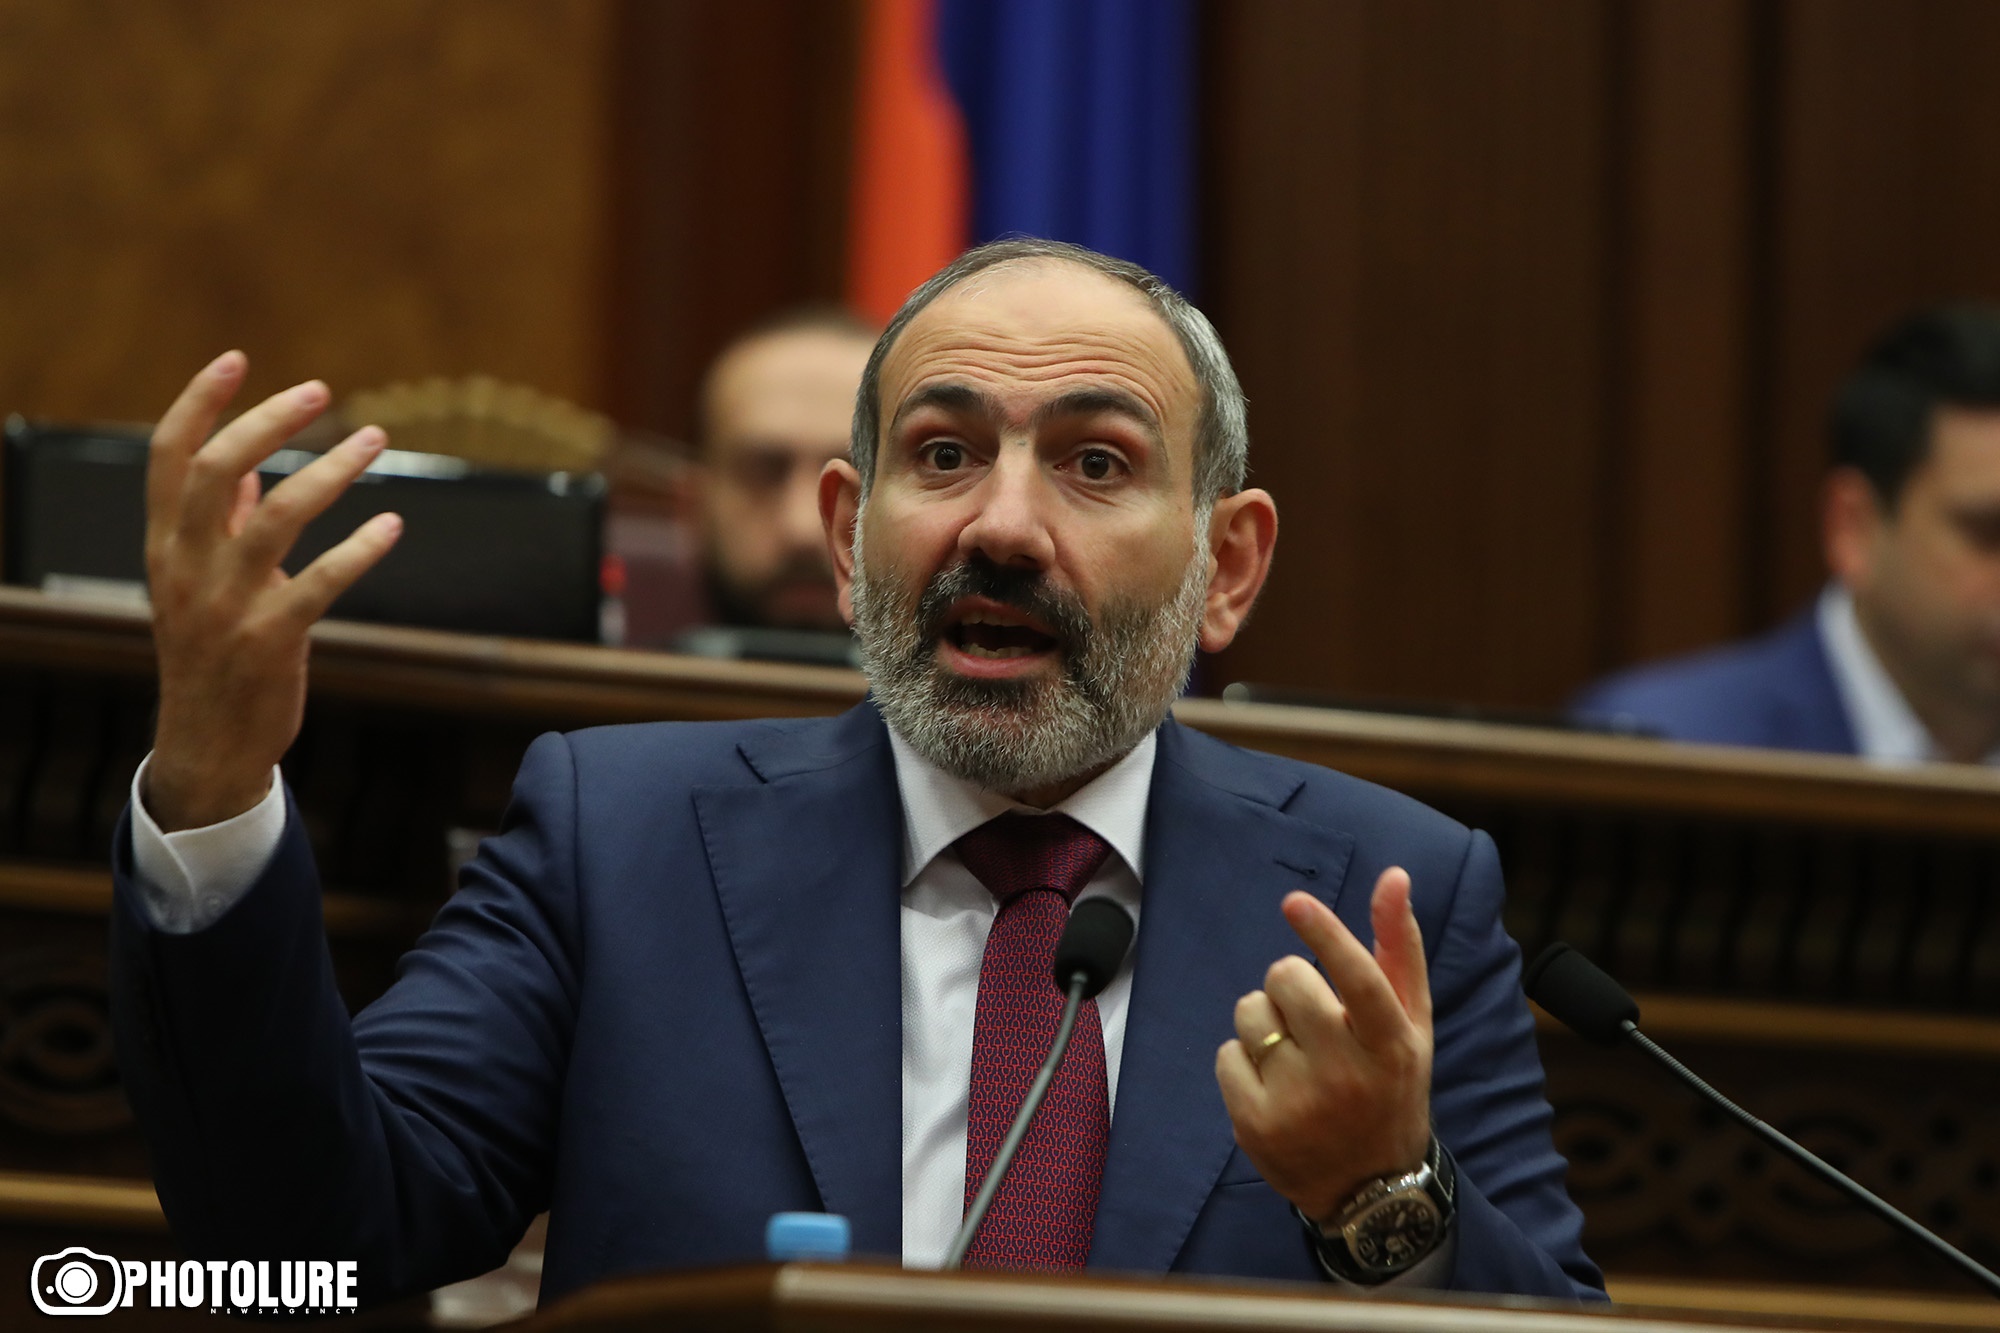 Пашинян не видит признаков коррупционной сделки в решении мэра Еревана